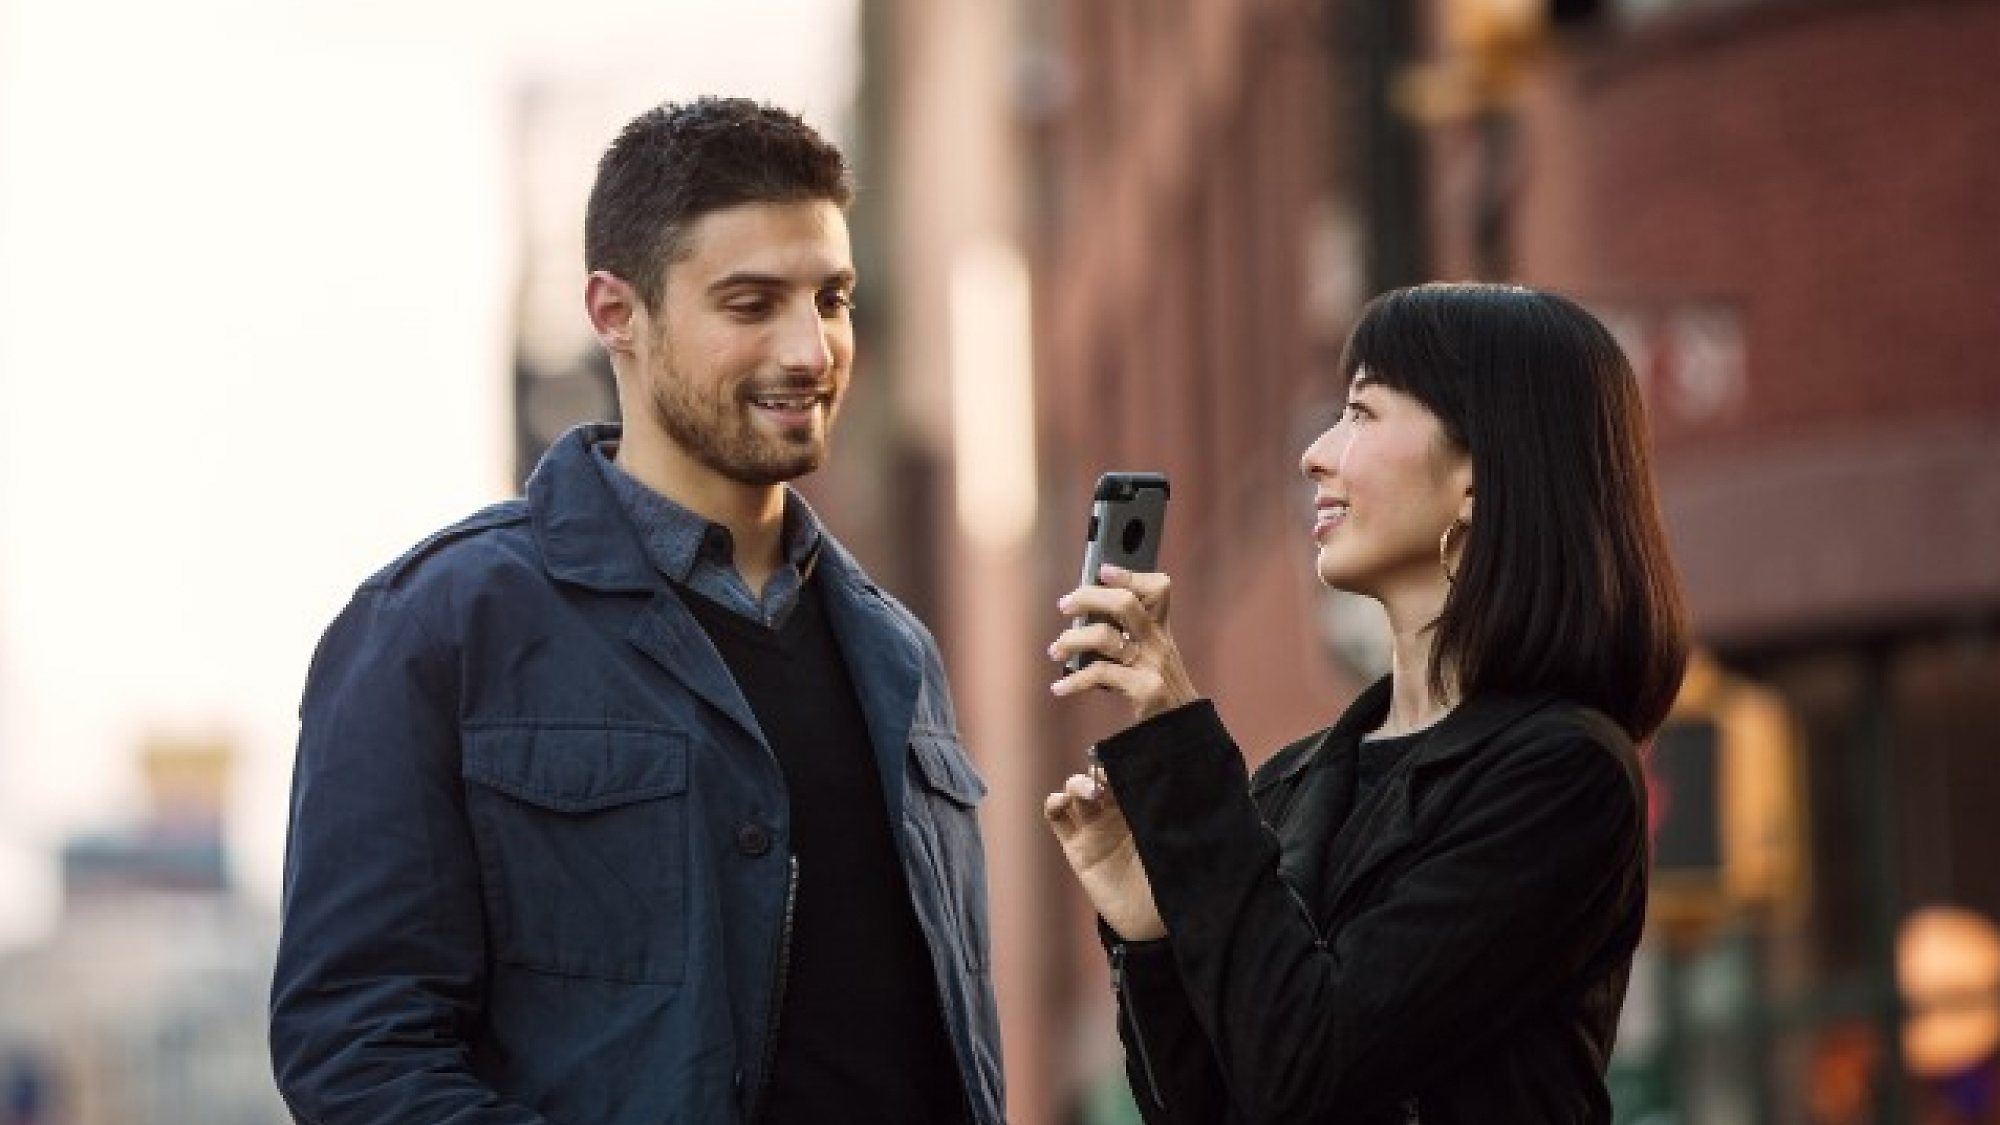 אישה מחזיקה טלפון חכם ומצביעה איתו לכיוון גבר. שניהם עומדים ברחוב עירוני, מחייכים ומשוחחים.